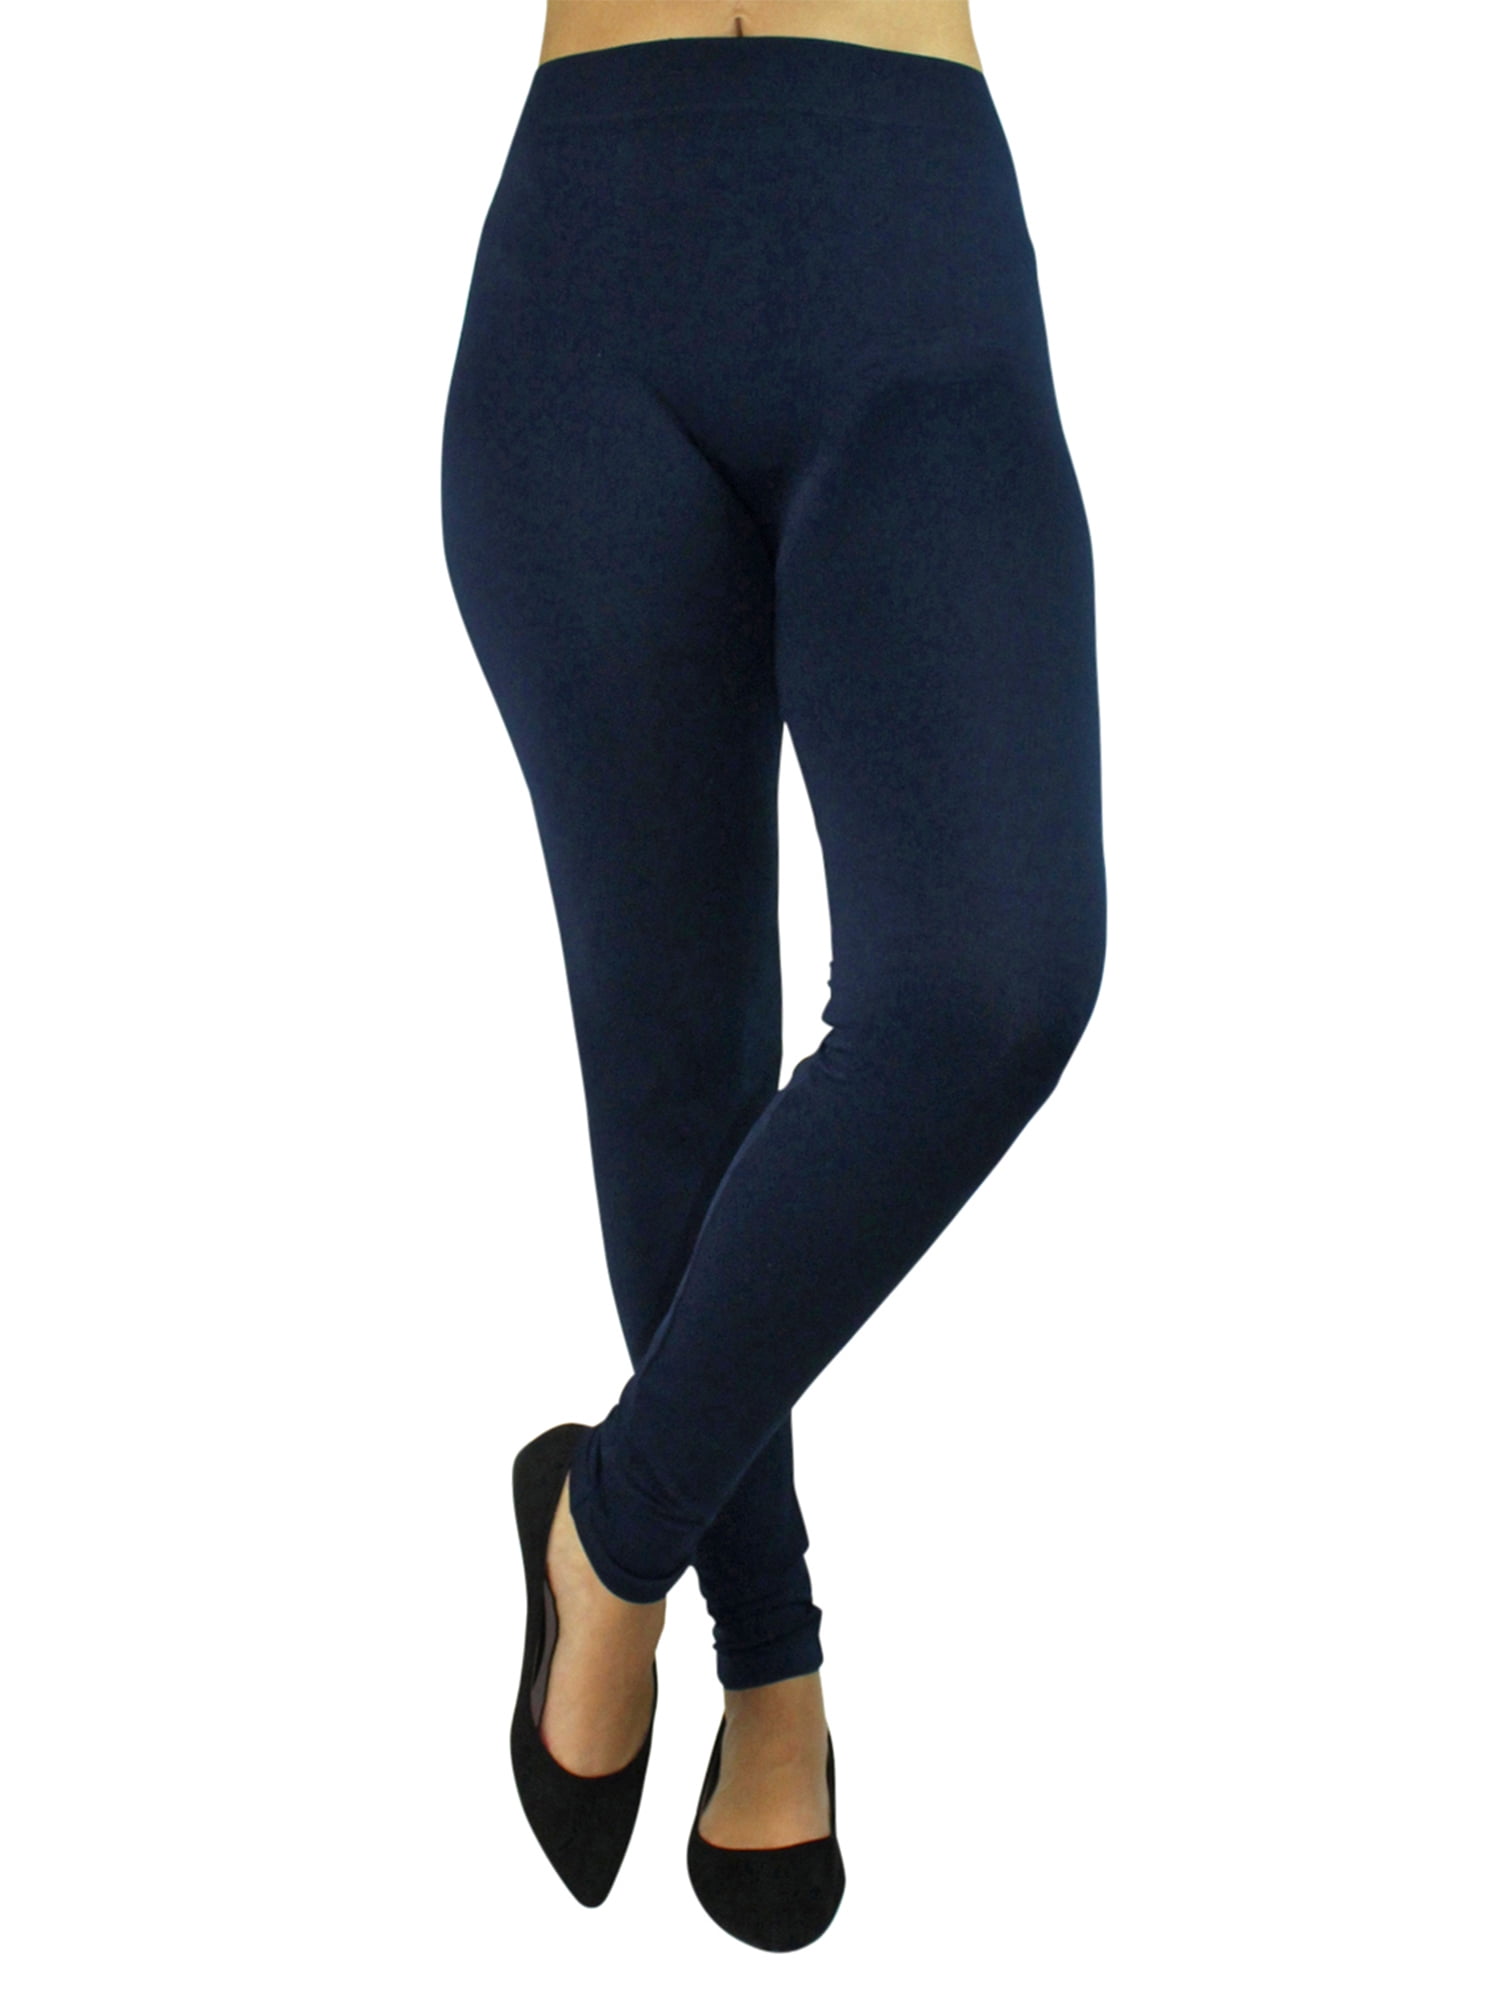 Dark Navy Blue Full Length Seamless Leggings For Women